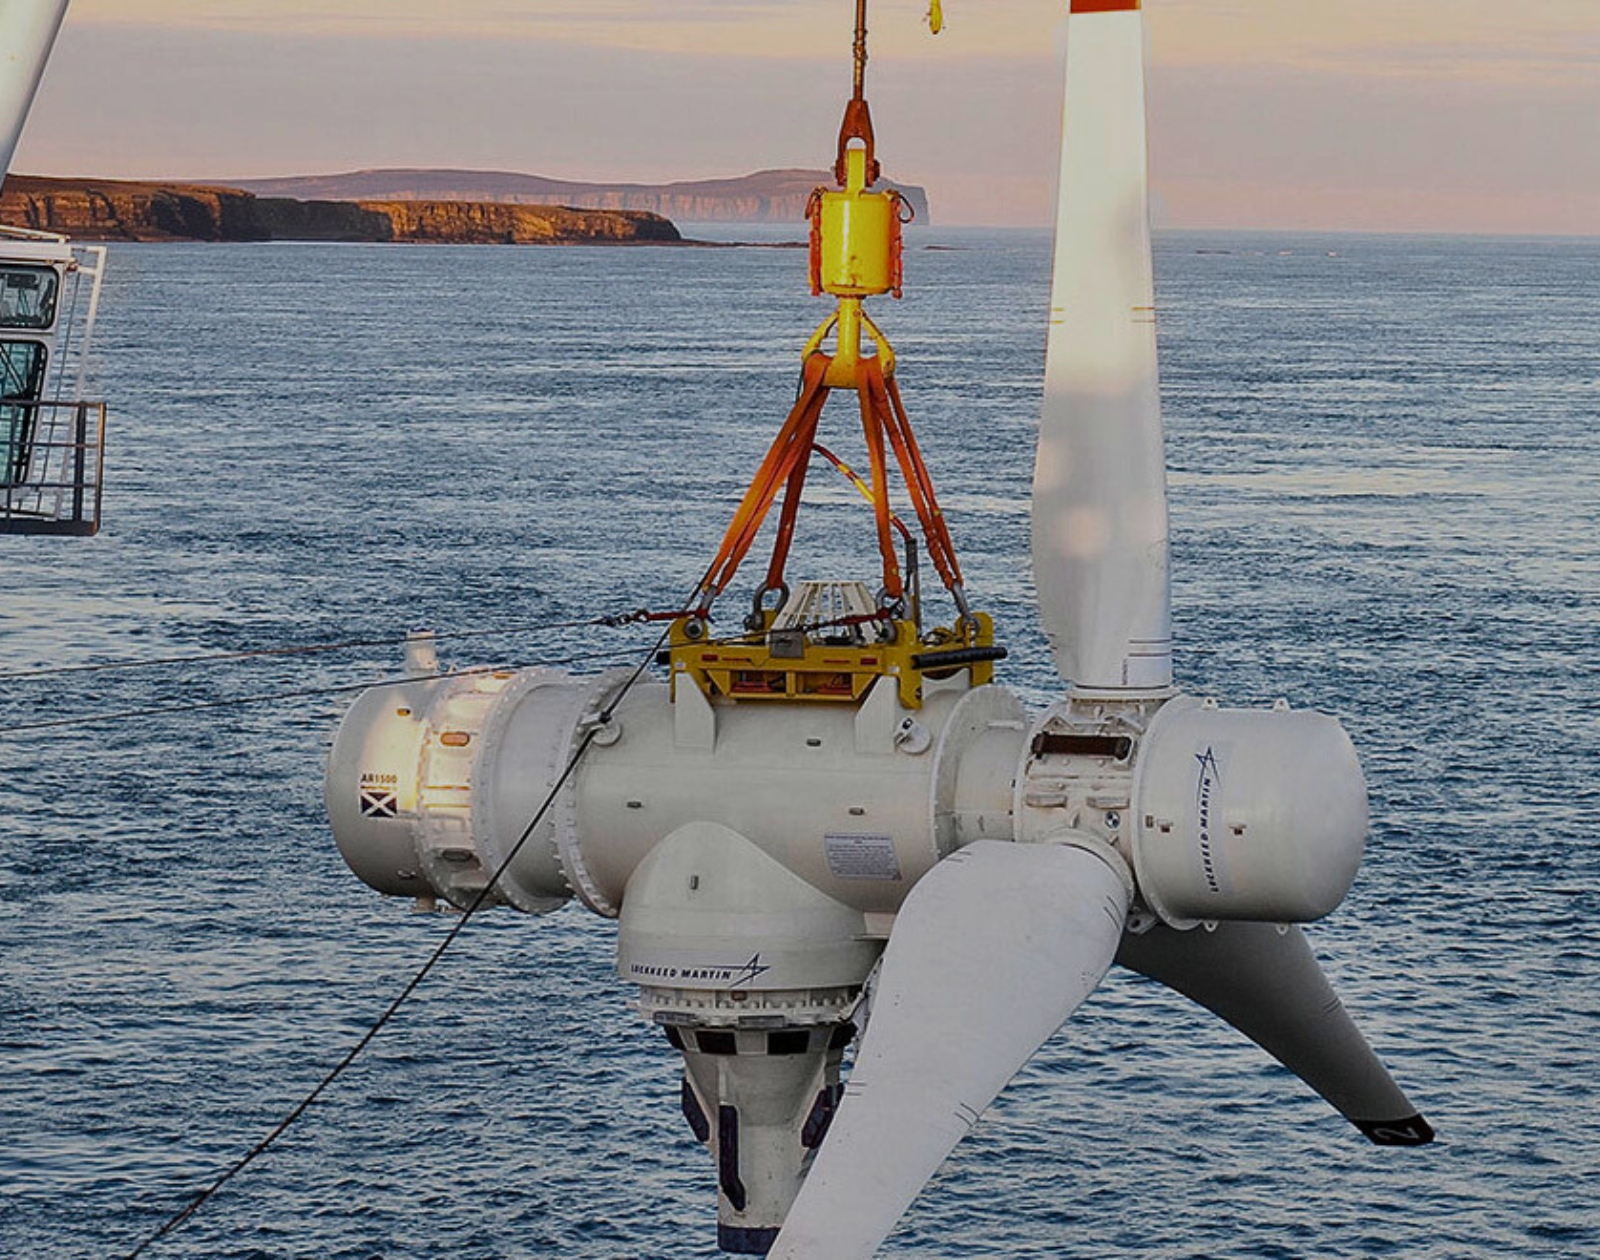 Chantiers de l'Atlantique : Bientôt un immense prototype de voile pour  équiper les paquebots